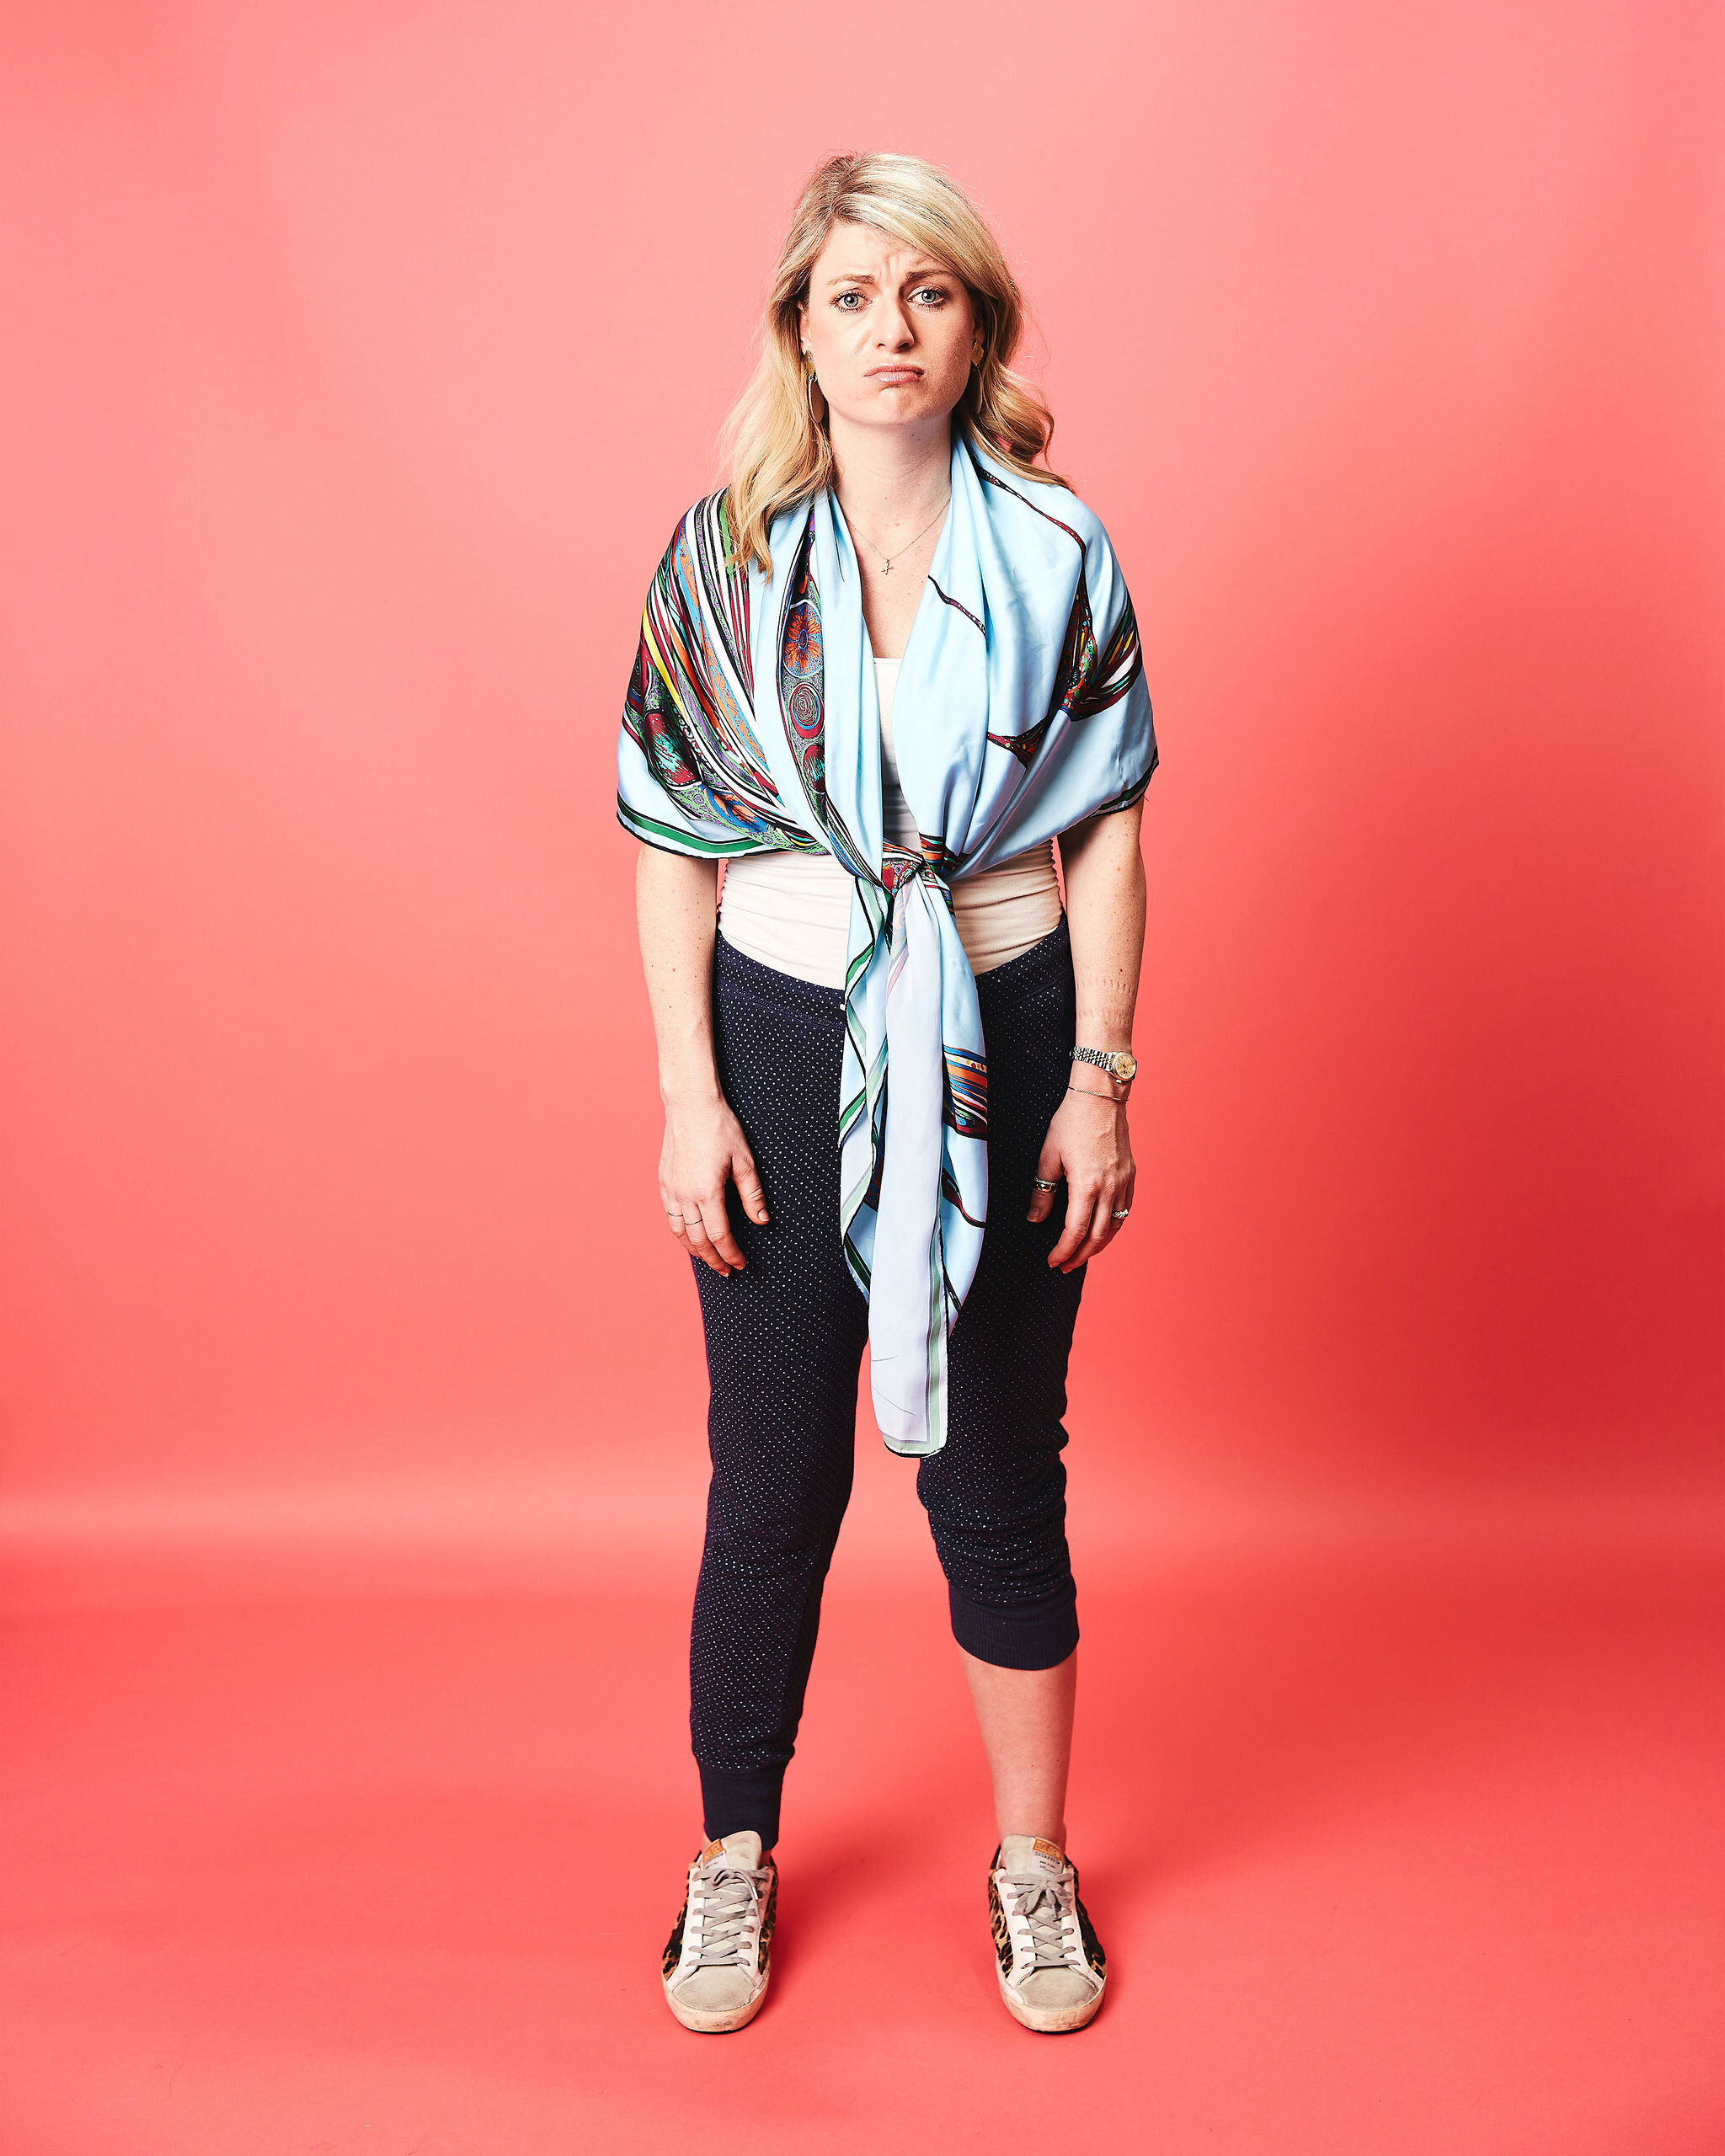 Meet Bethany Swonson // COVIDwear